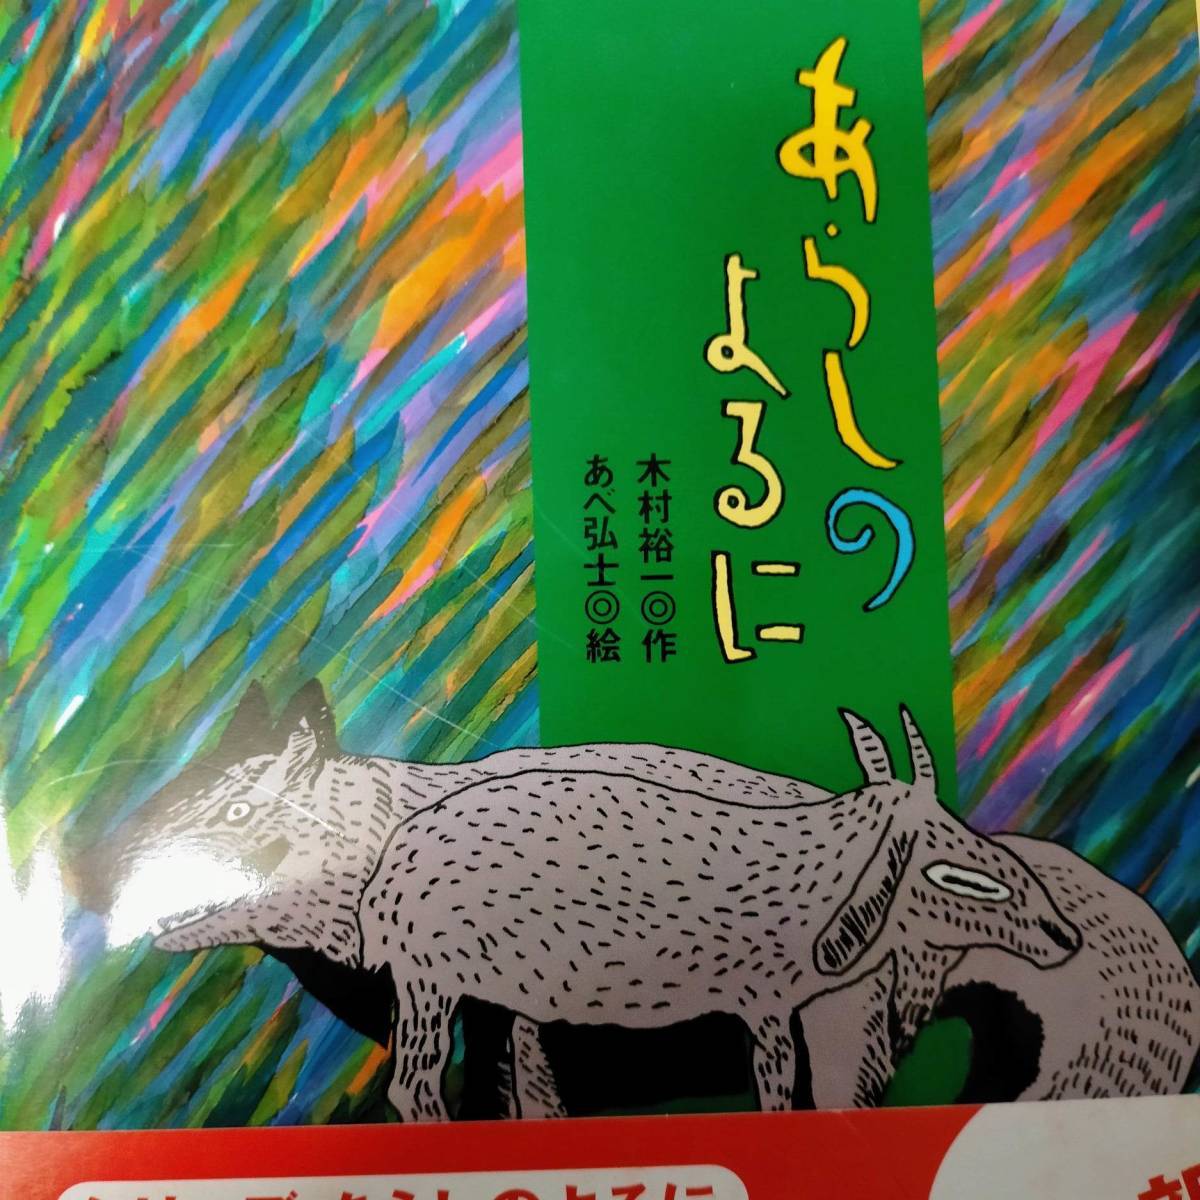 絵本 サイン あらしのよるに 木村裕一 あべ弘士 ONE STORMY NIGHT Kimura Yuuichi Abe Hiroshi autograph picture book Goat Mei wolf Gabu